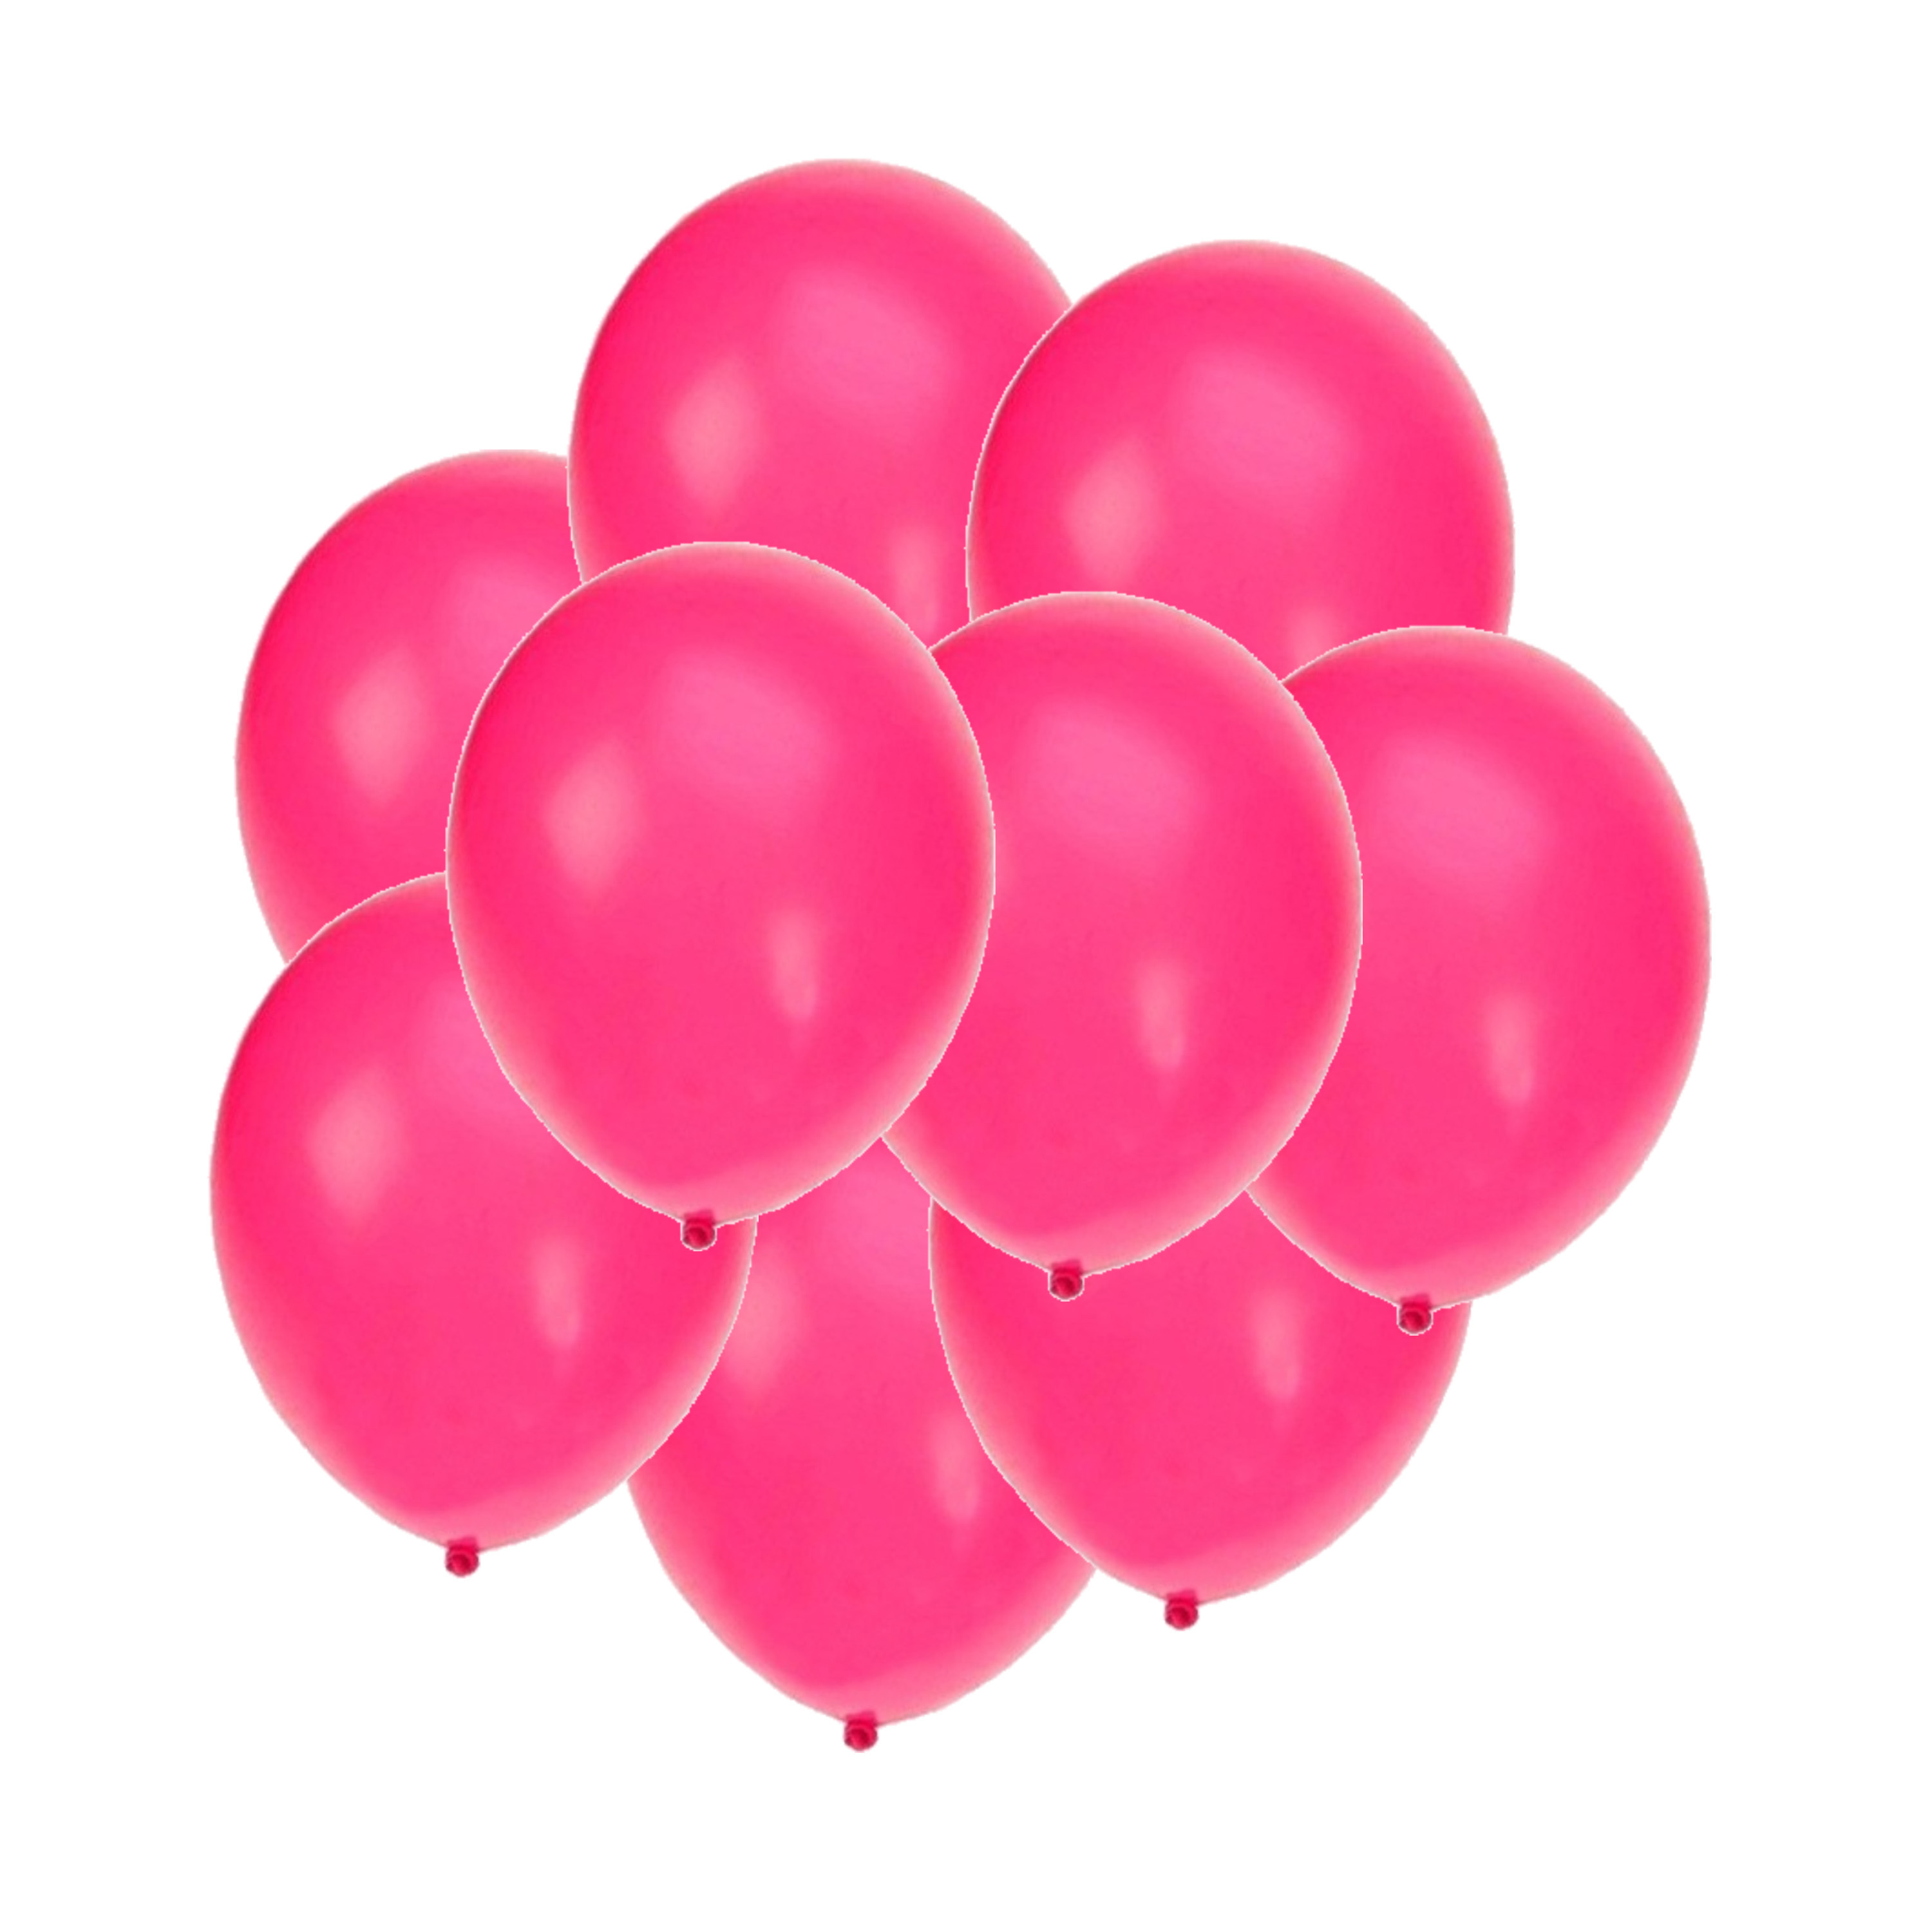 Bellatio decorations - Ballonnen knalroze/felroze 150x stuks rond 27 cm - Top Merken Winkel